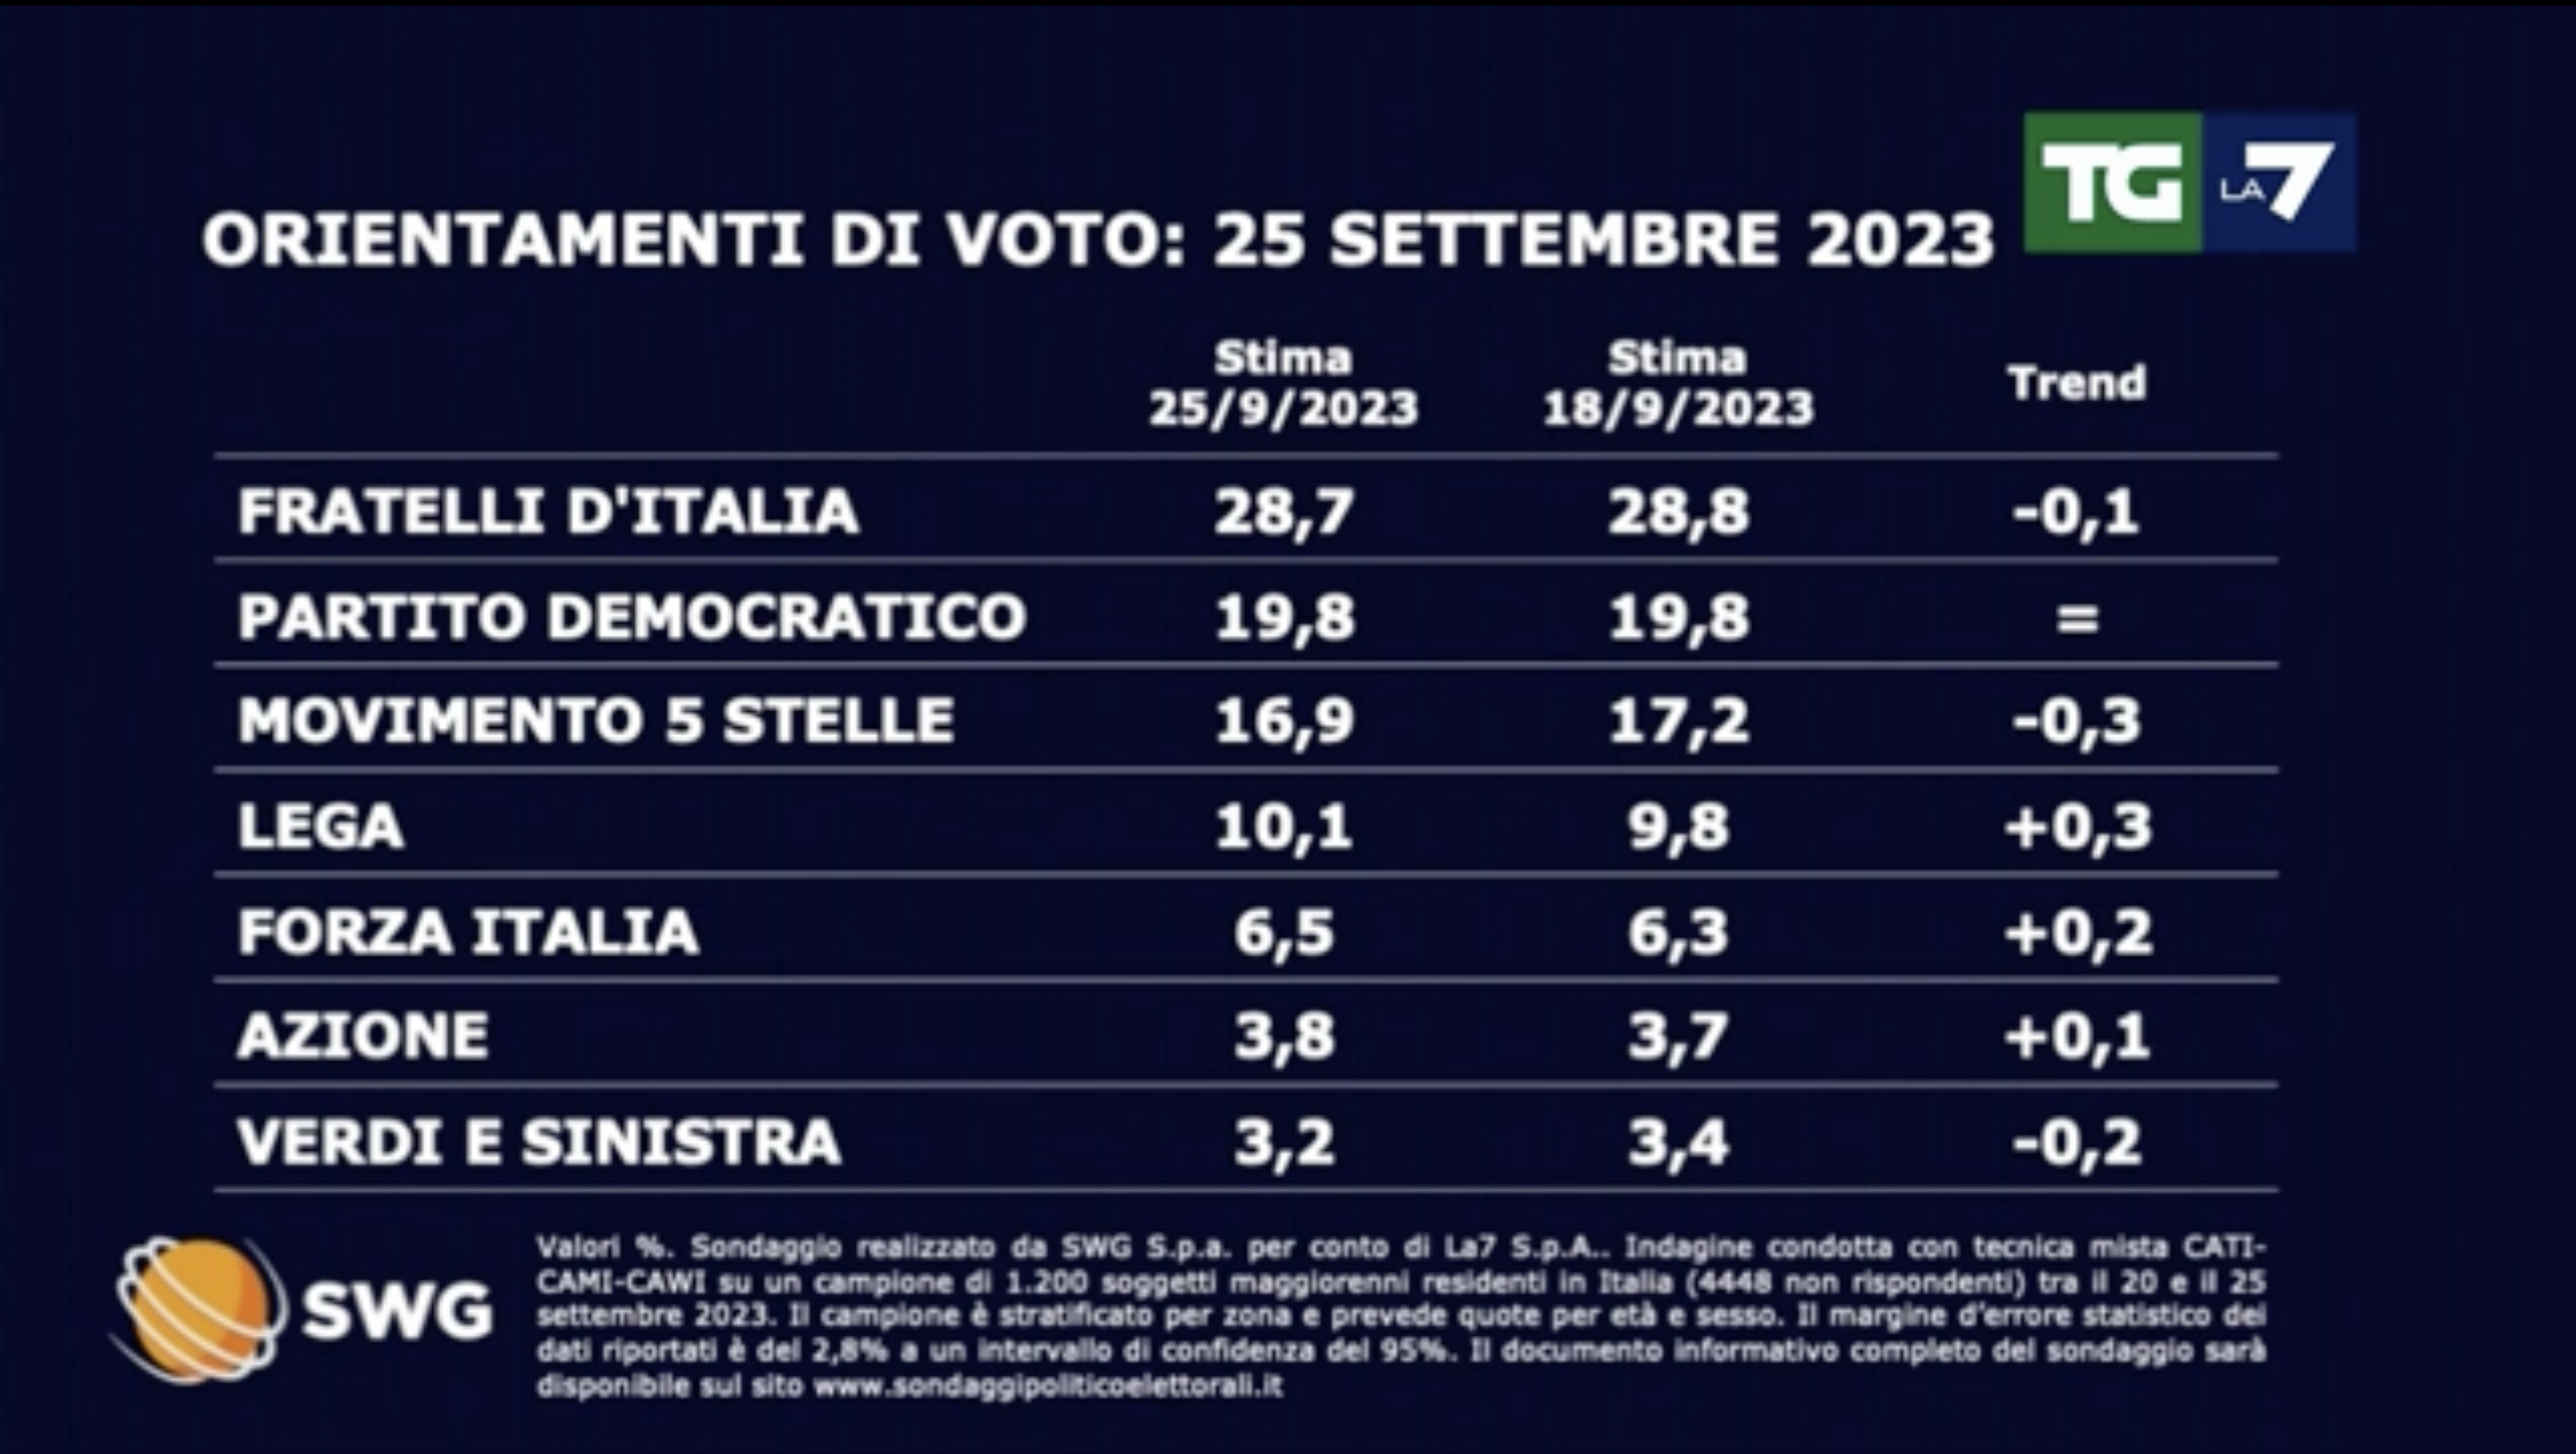 Sondaggi politici elettorali oggi 27 settembre 2023: calano Fdi e M5S, risalgono Lega e Forza Italia